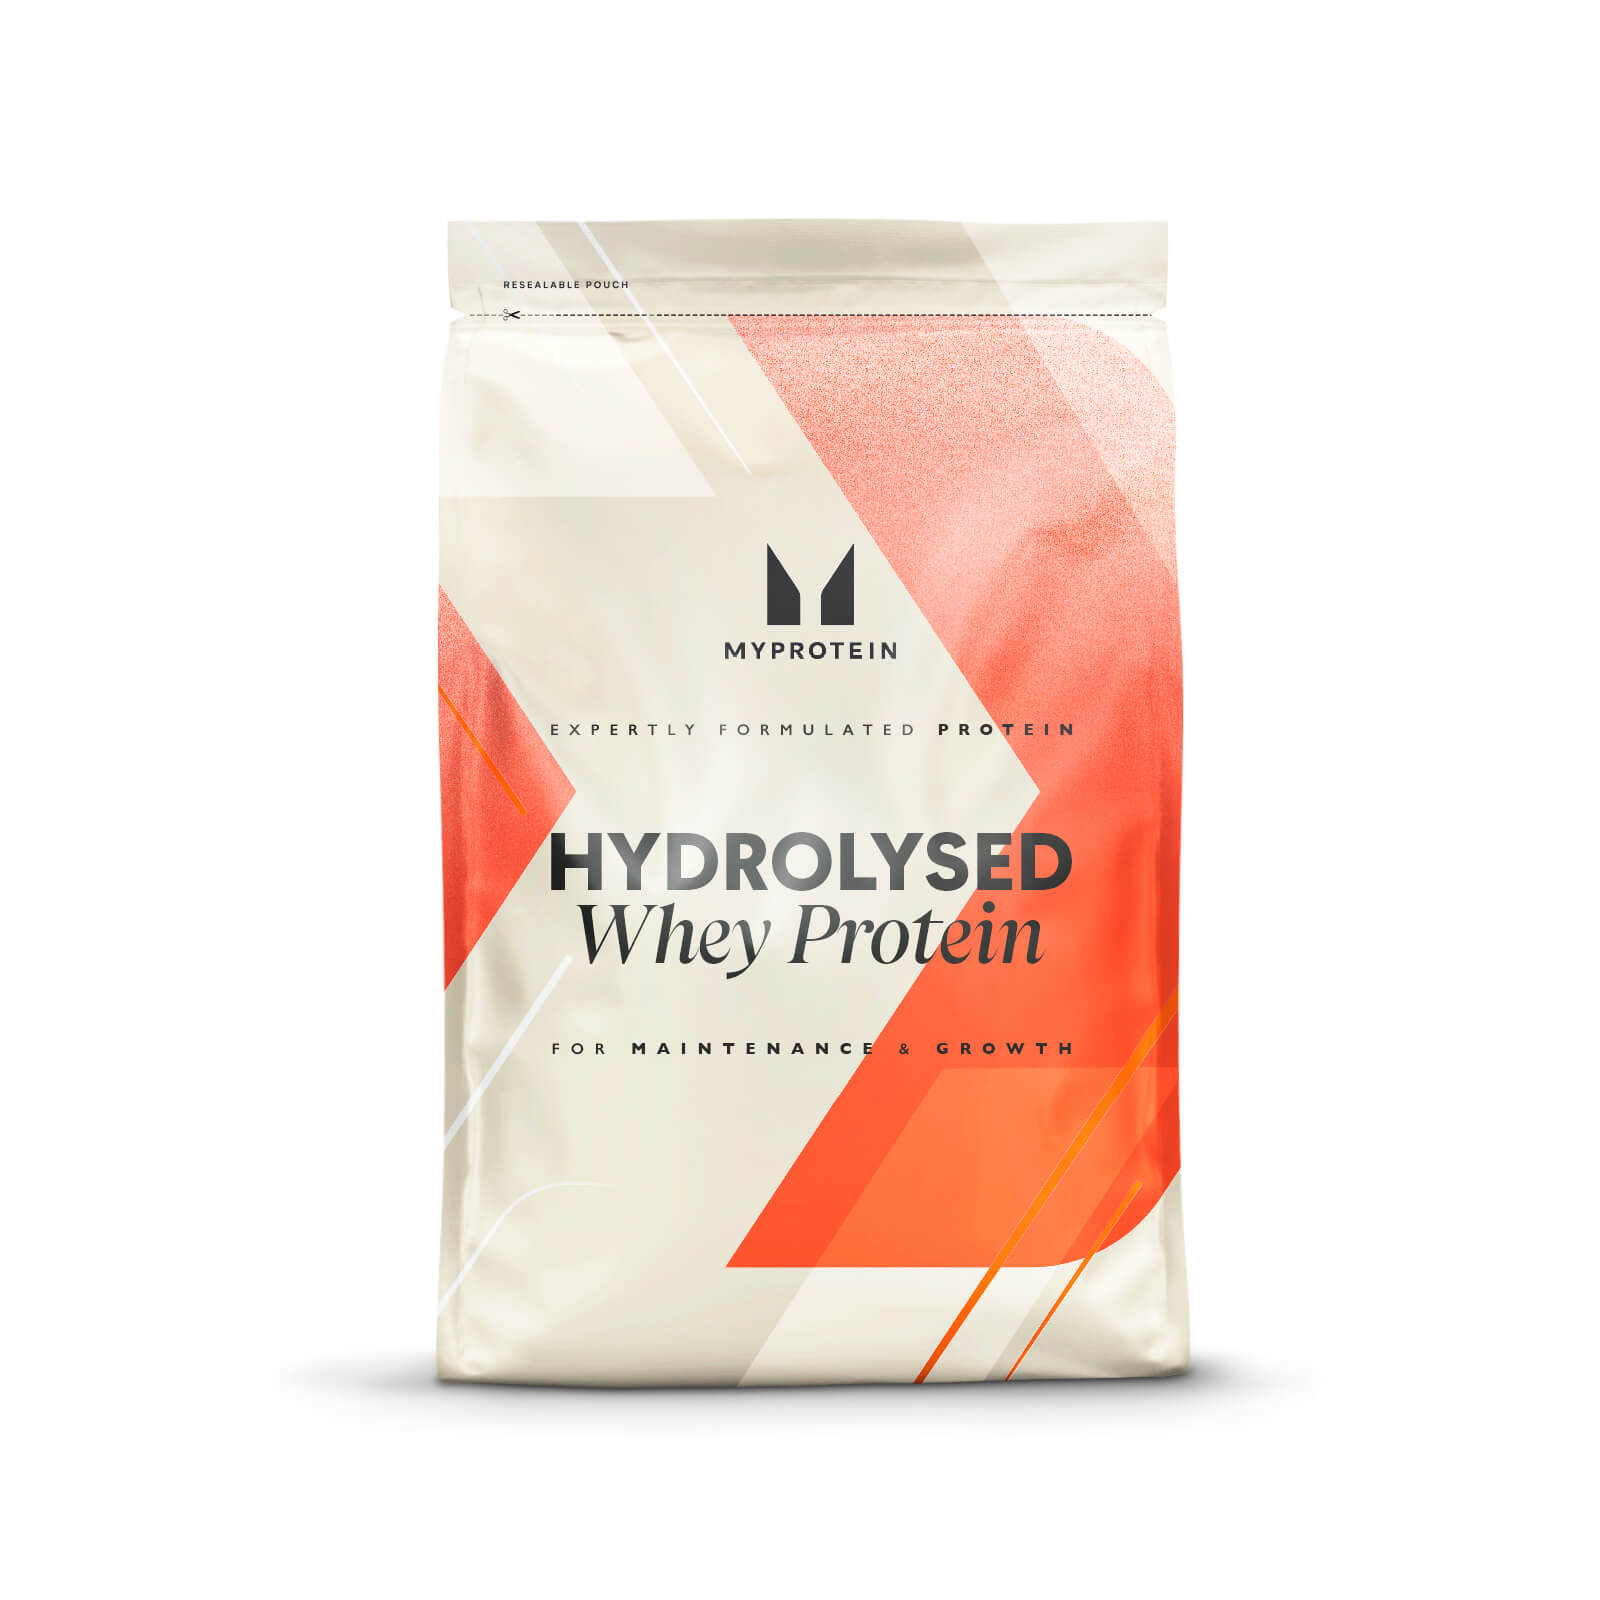 Hydrolysed Whey Protein Powder